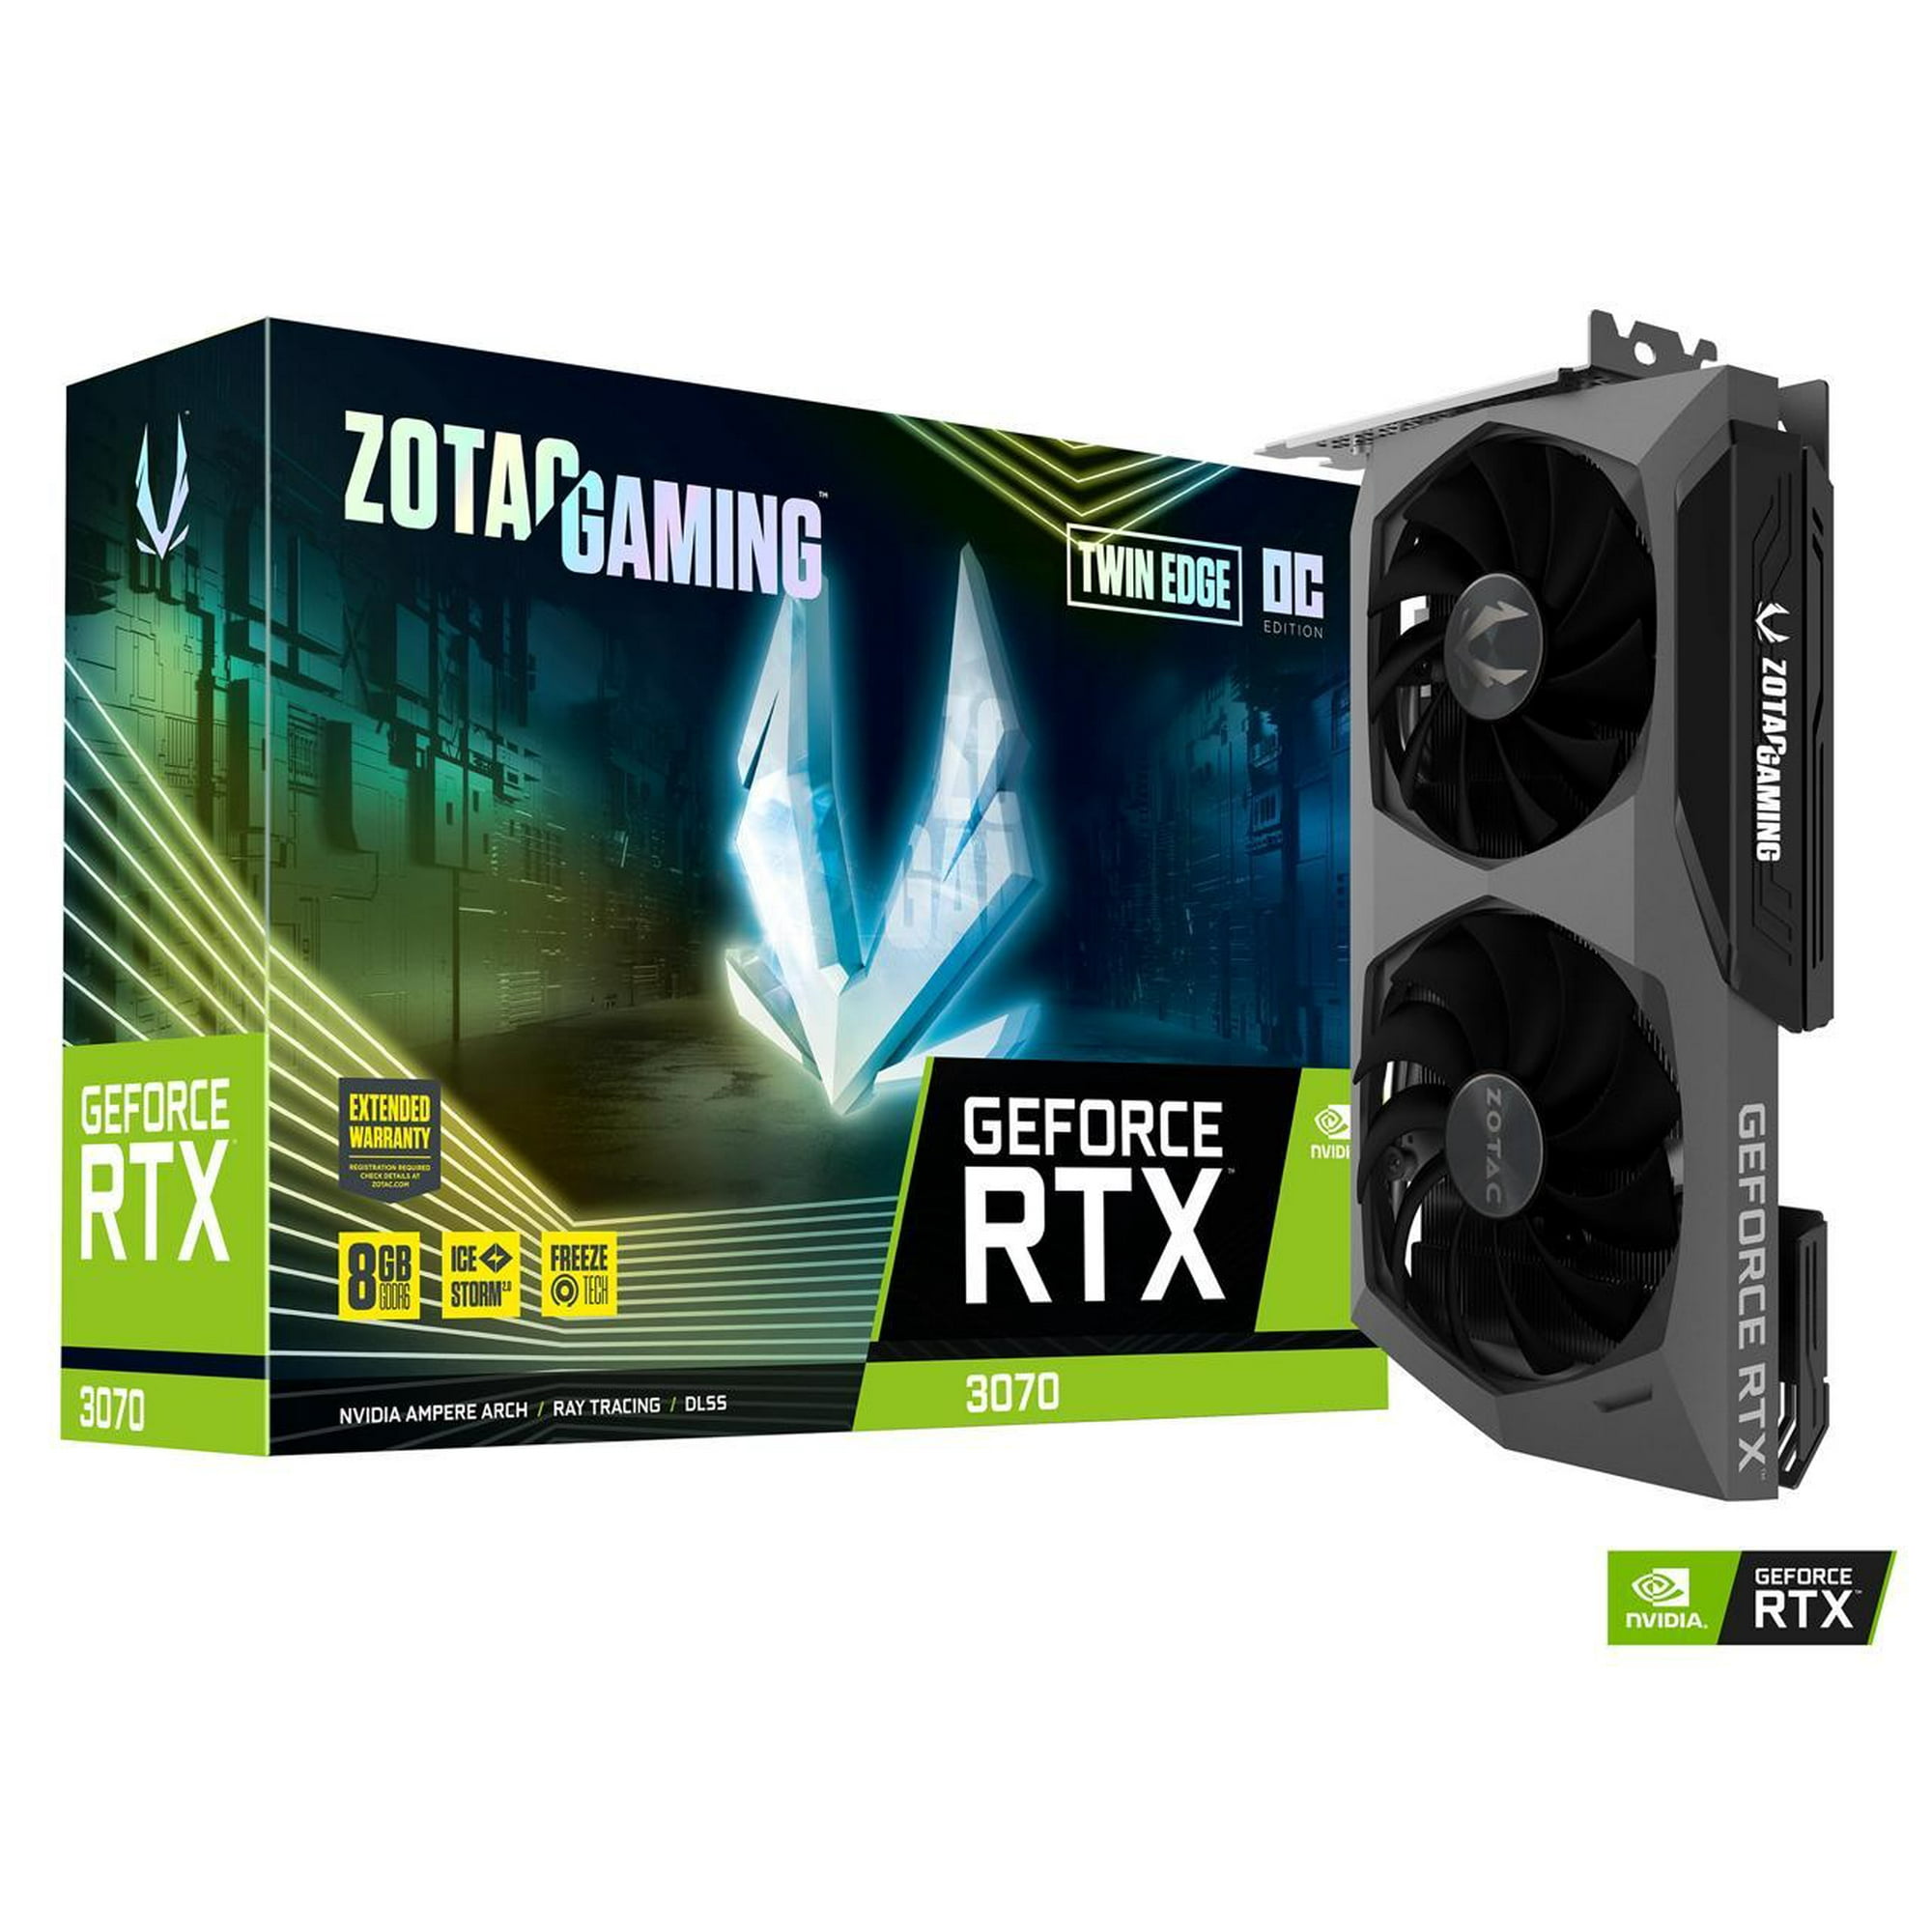 ZOTAC GAMING GeForce RTX 3070 Twin Edge OC 8GB GDDR6 256-bit 14